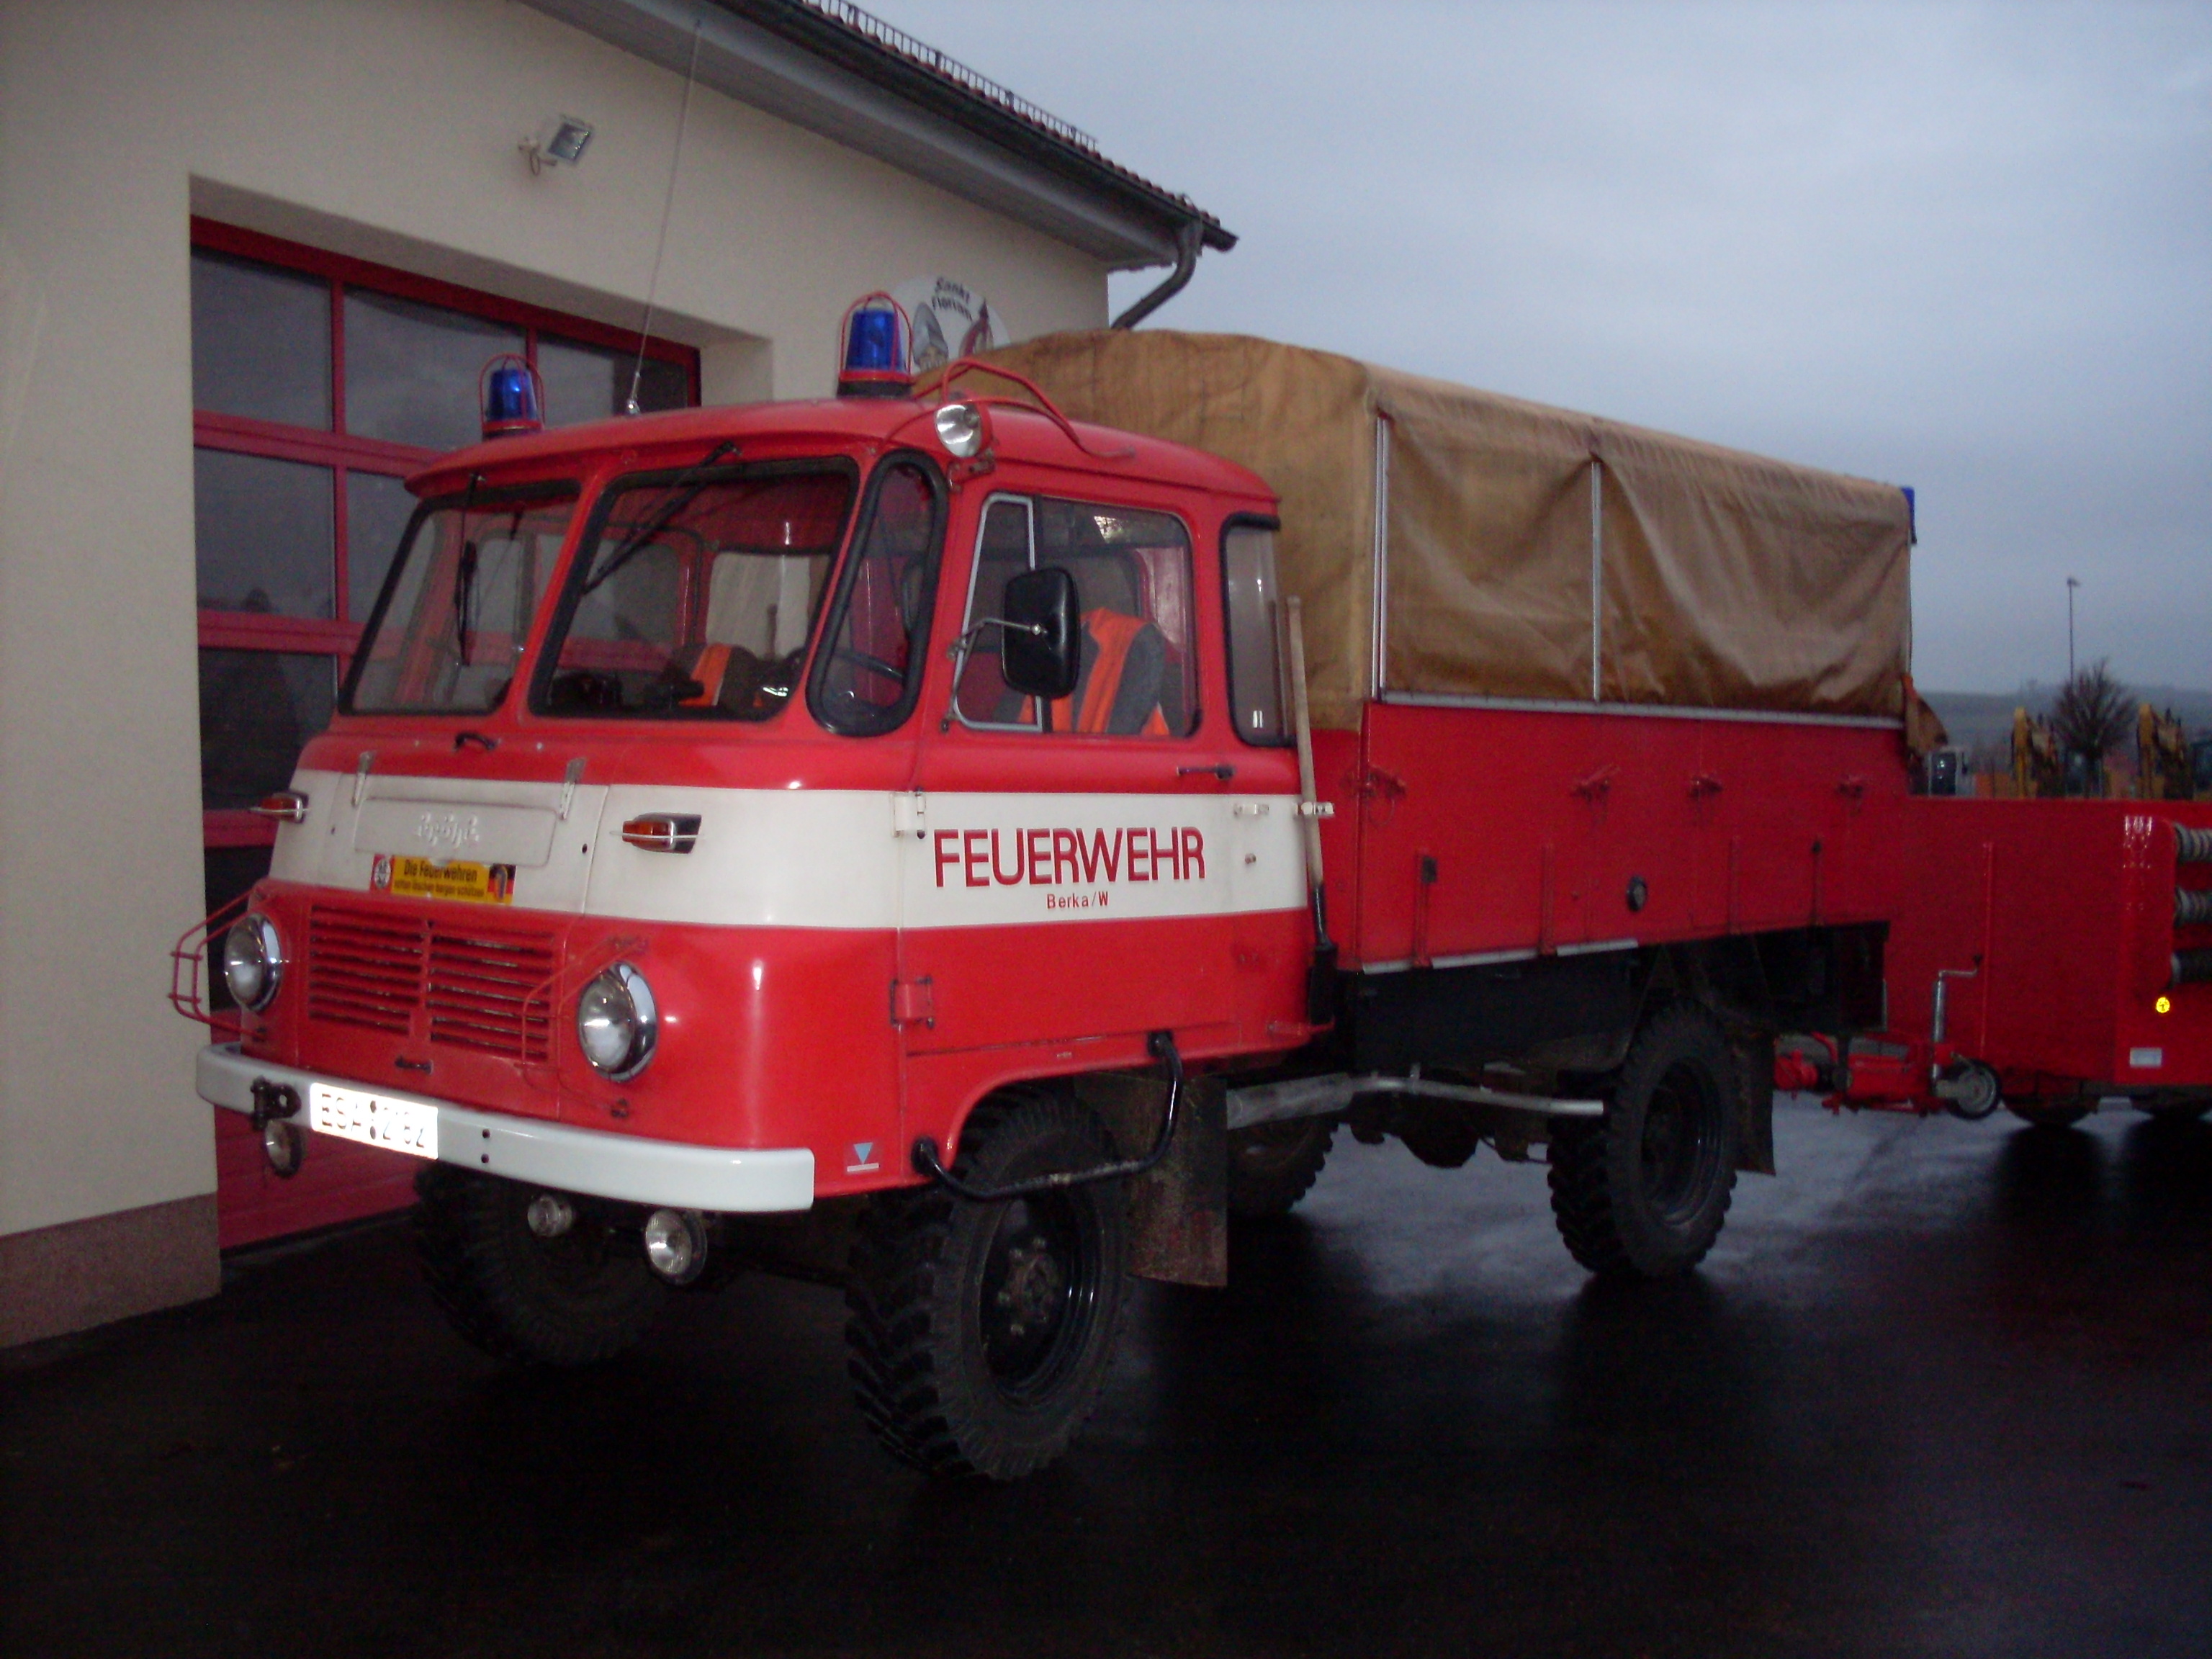 RW 1 - Berka/Werra - Feuerwehrfahrzeug in Berka/Werra